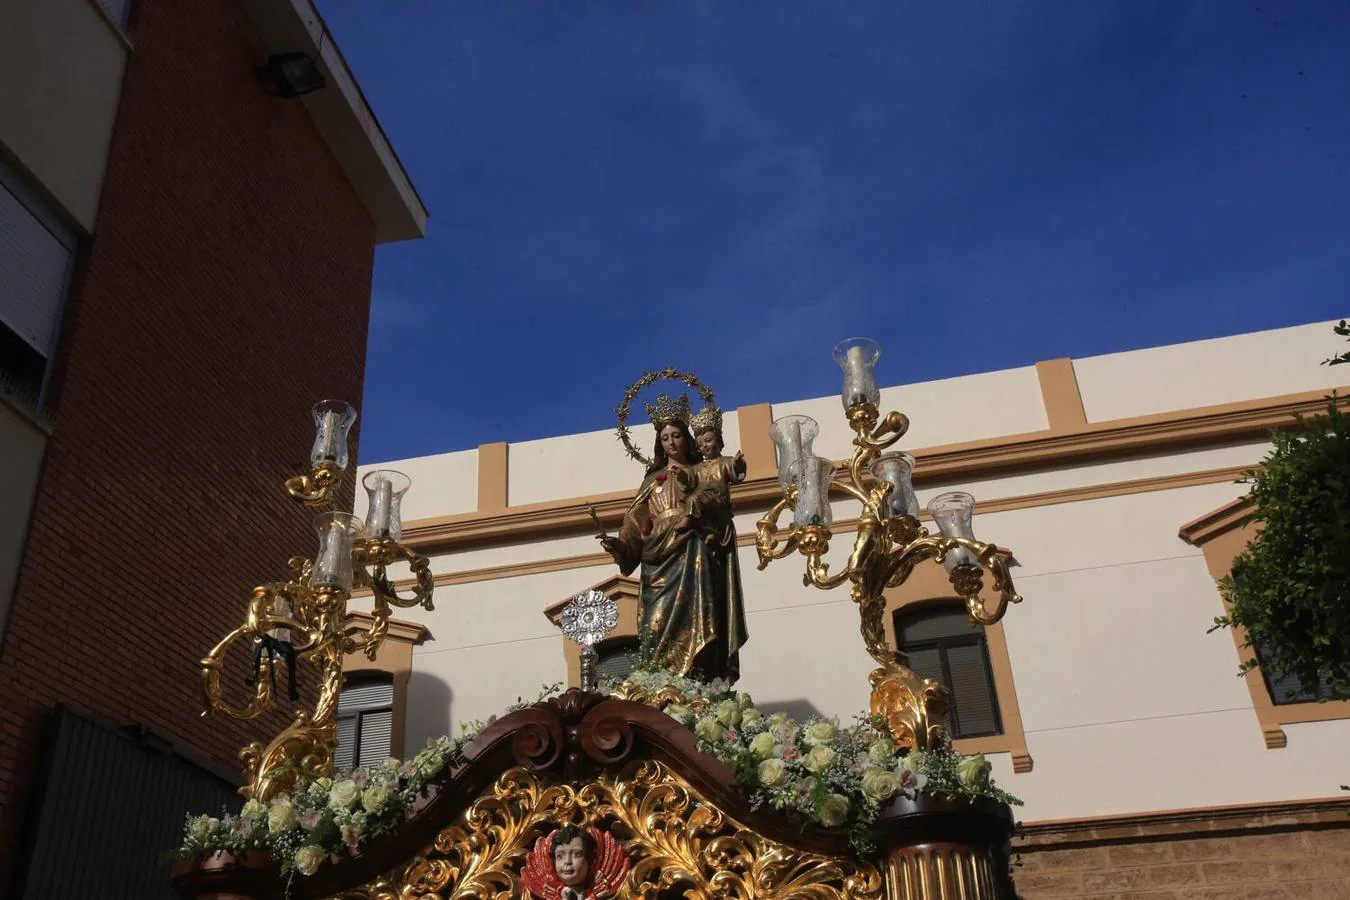 FOTOS: Procesión de María Auxiliadora en Cádiz